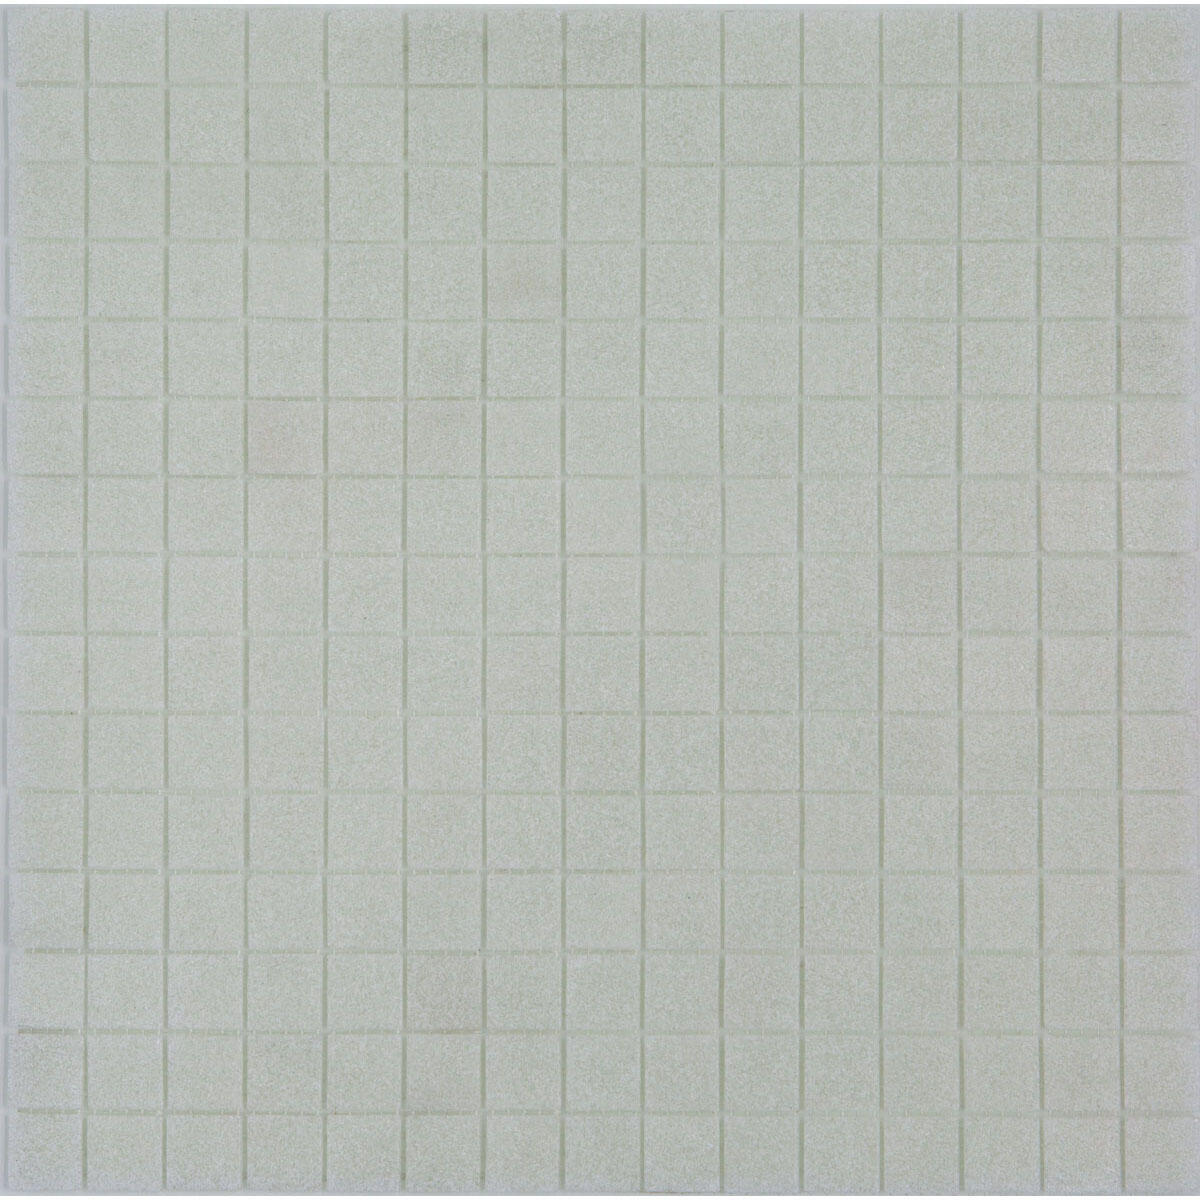 Campione di mosaico Sugar 20 H 10 x L 10 cm bianco - 1